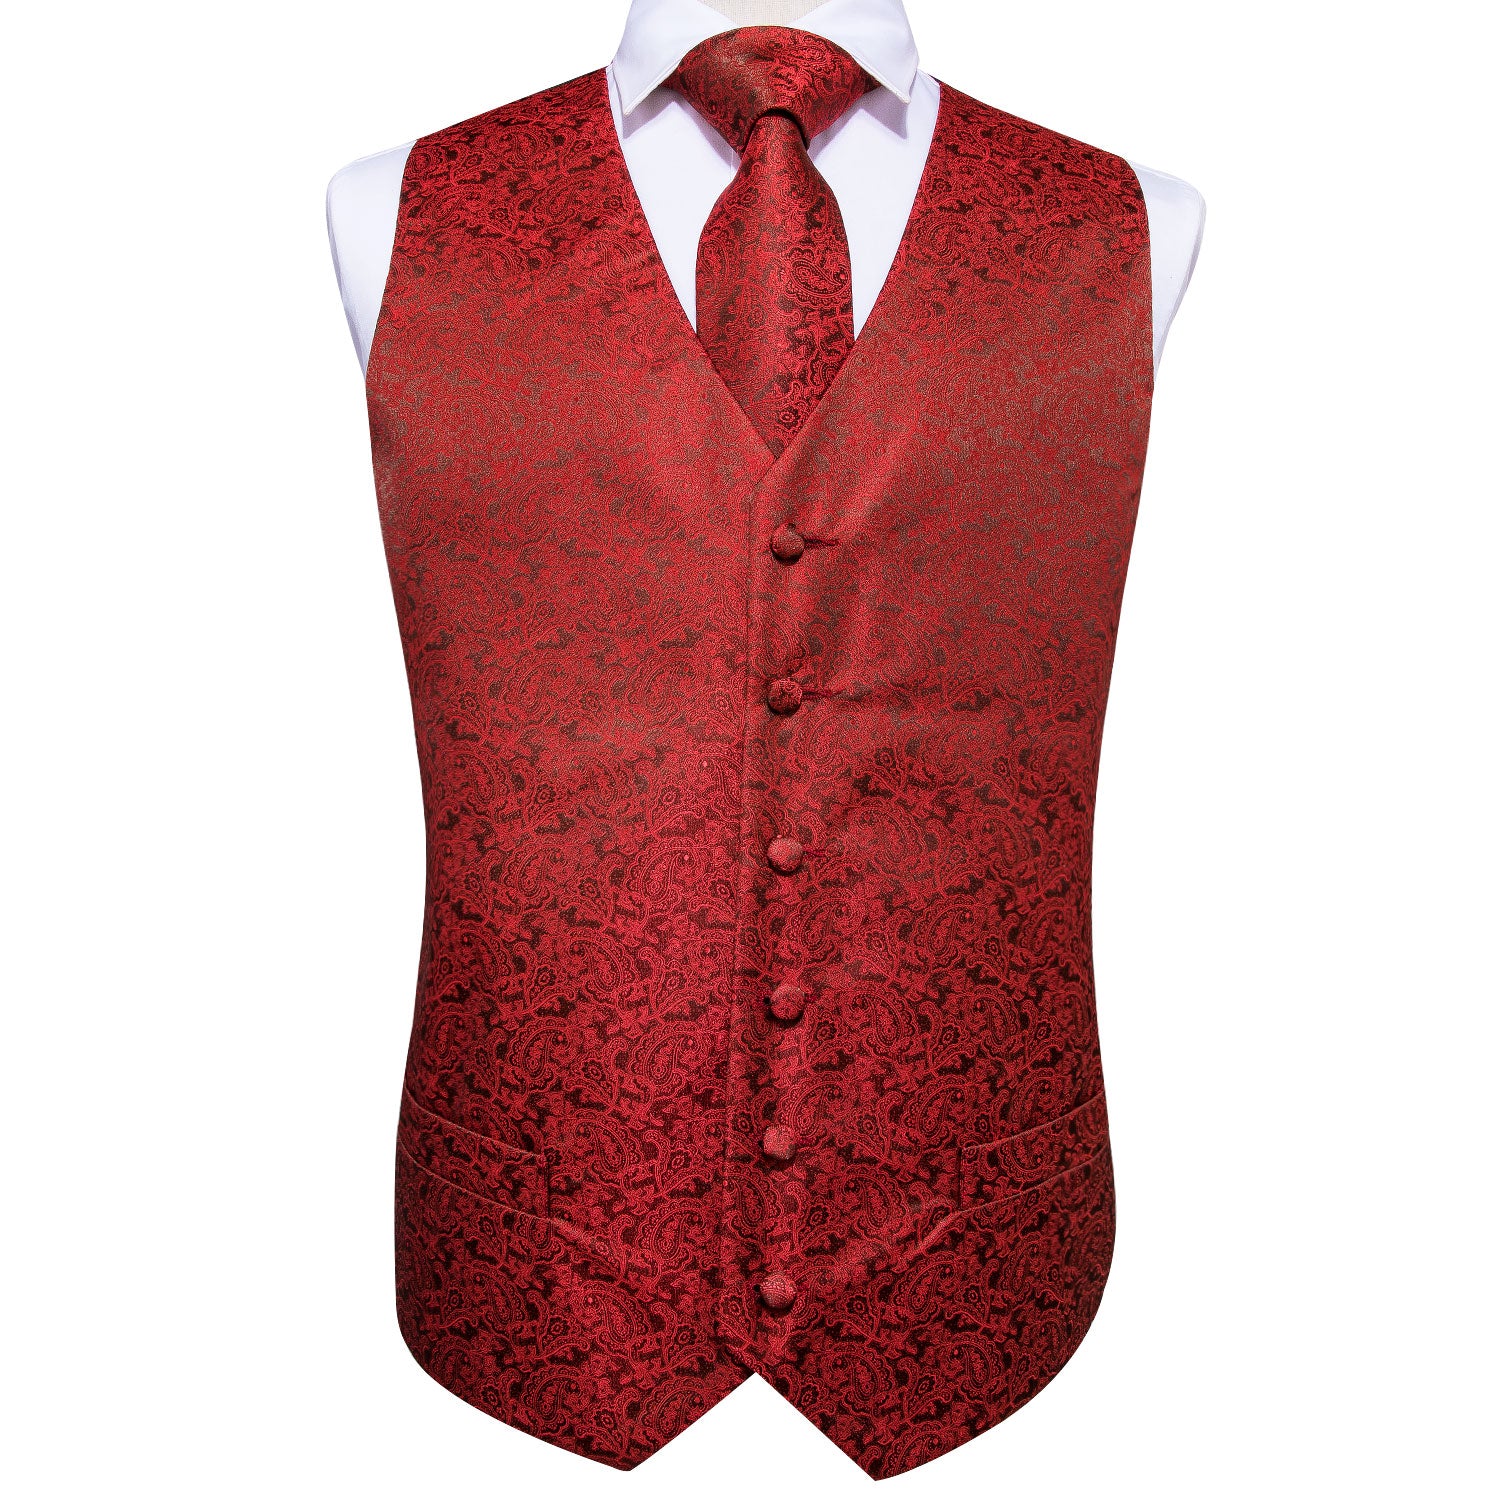 Luxury Red Paisley Vest Tie Set